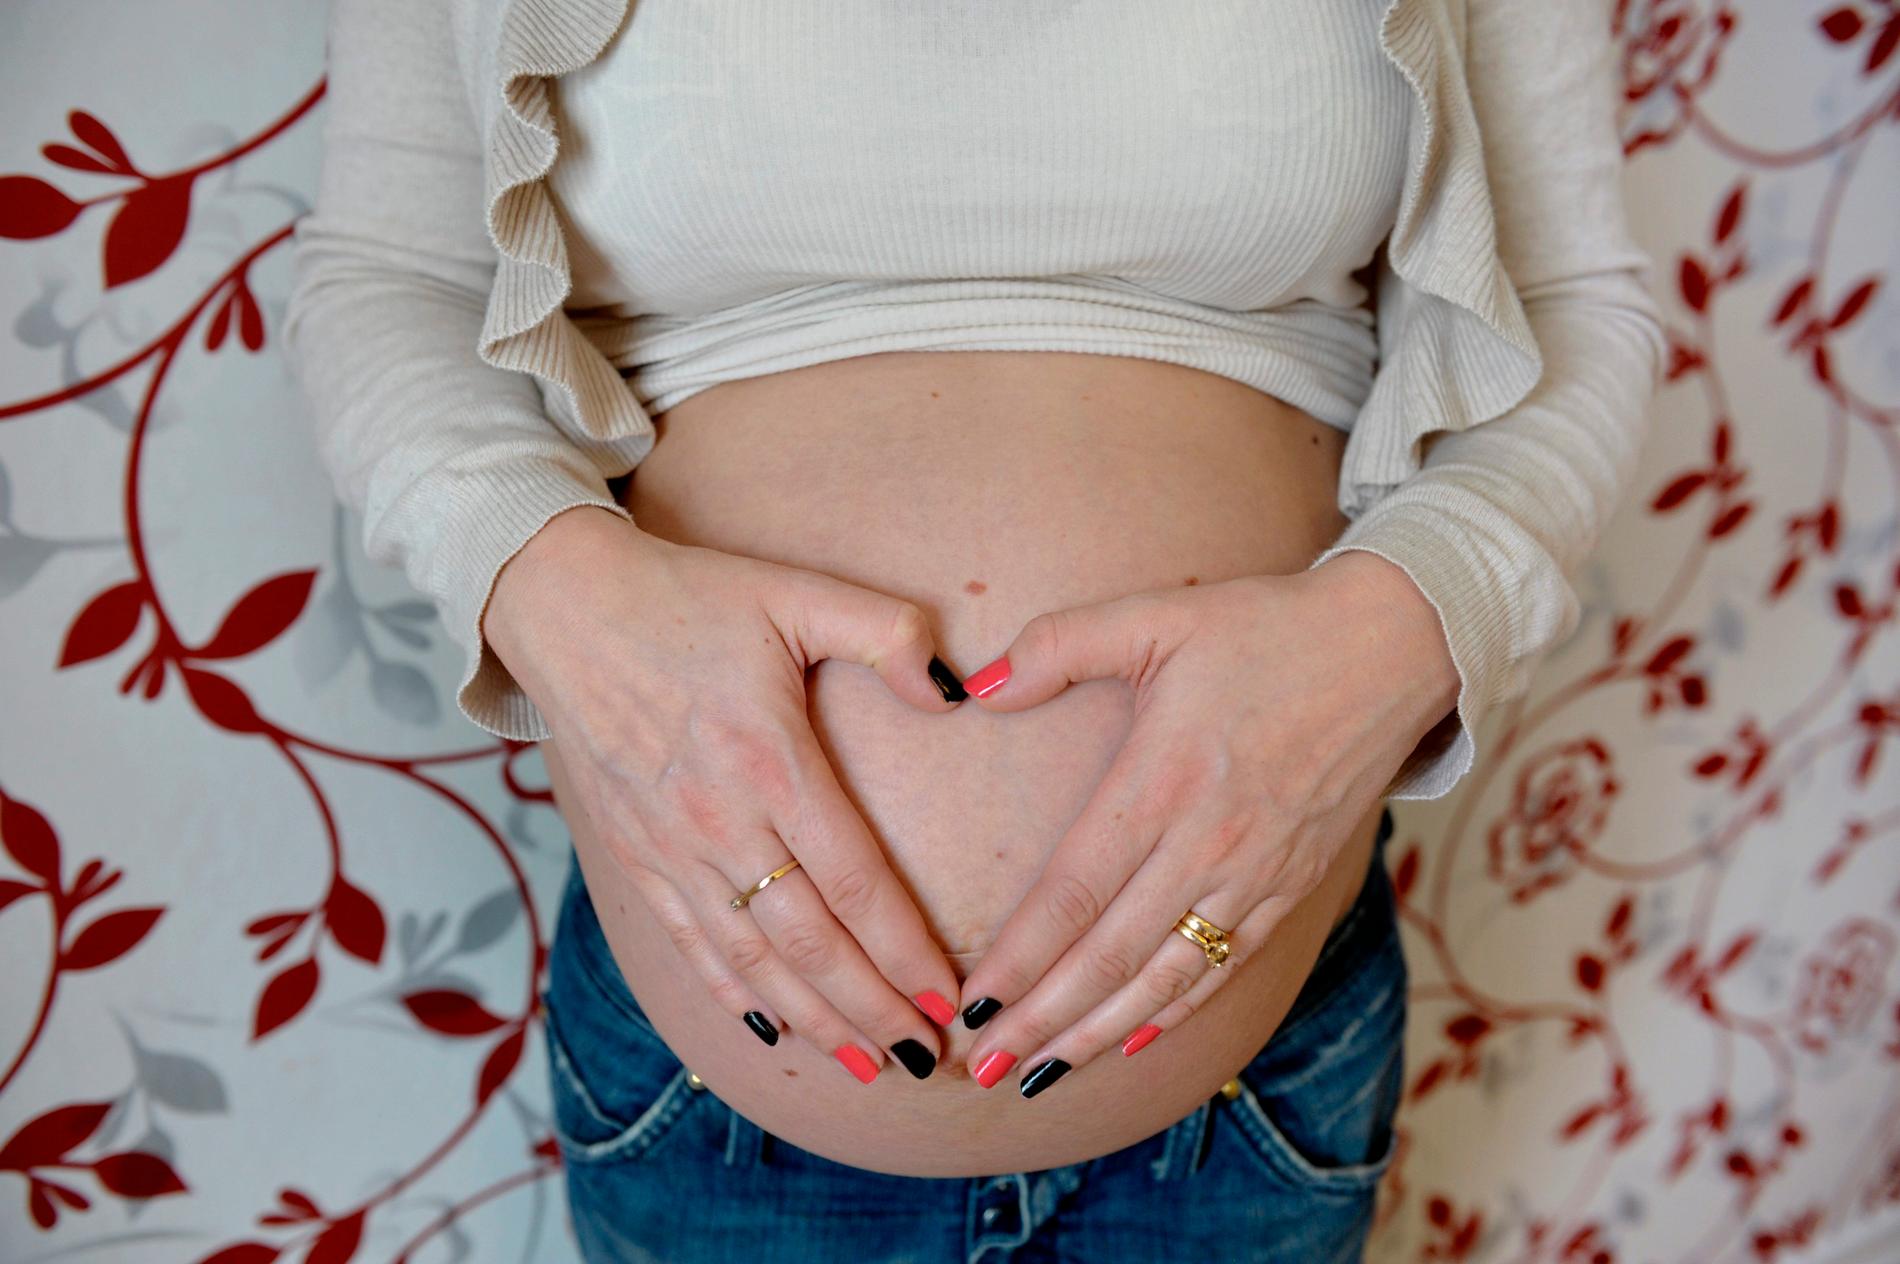 Folkhälsomyndigheten uppmanar gravida att vara extra försiktiga och följa restriktionerna. Arkivbild